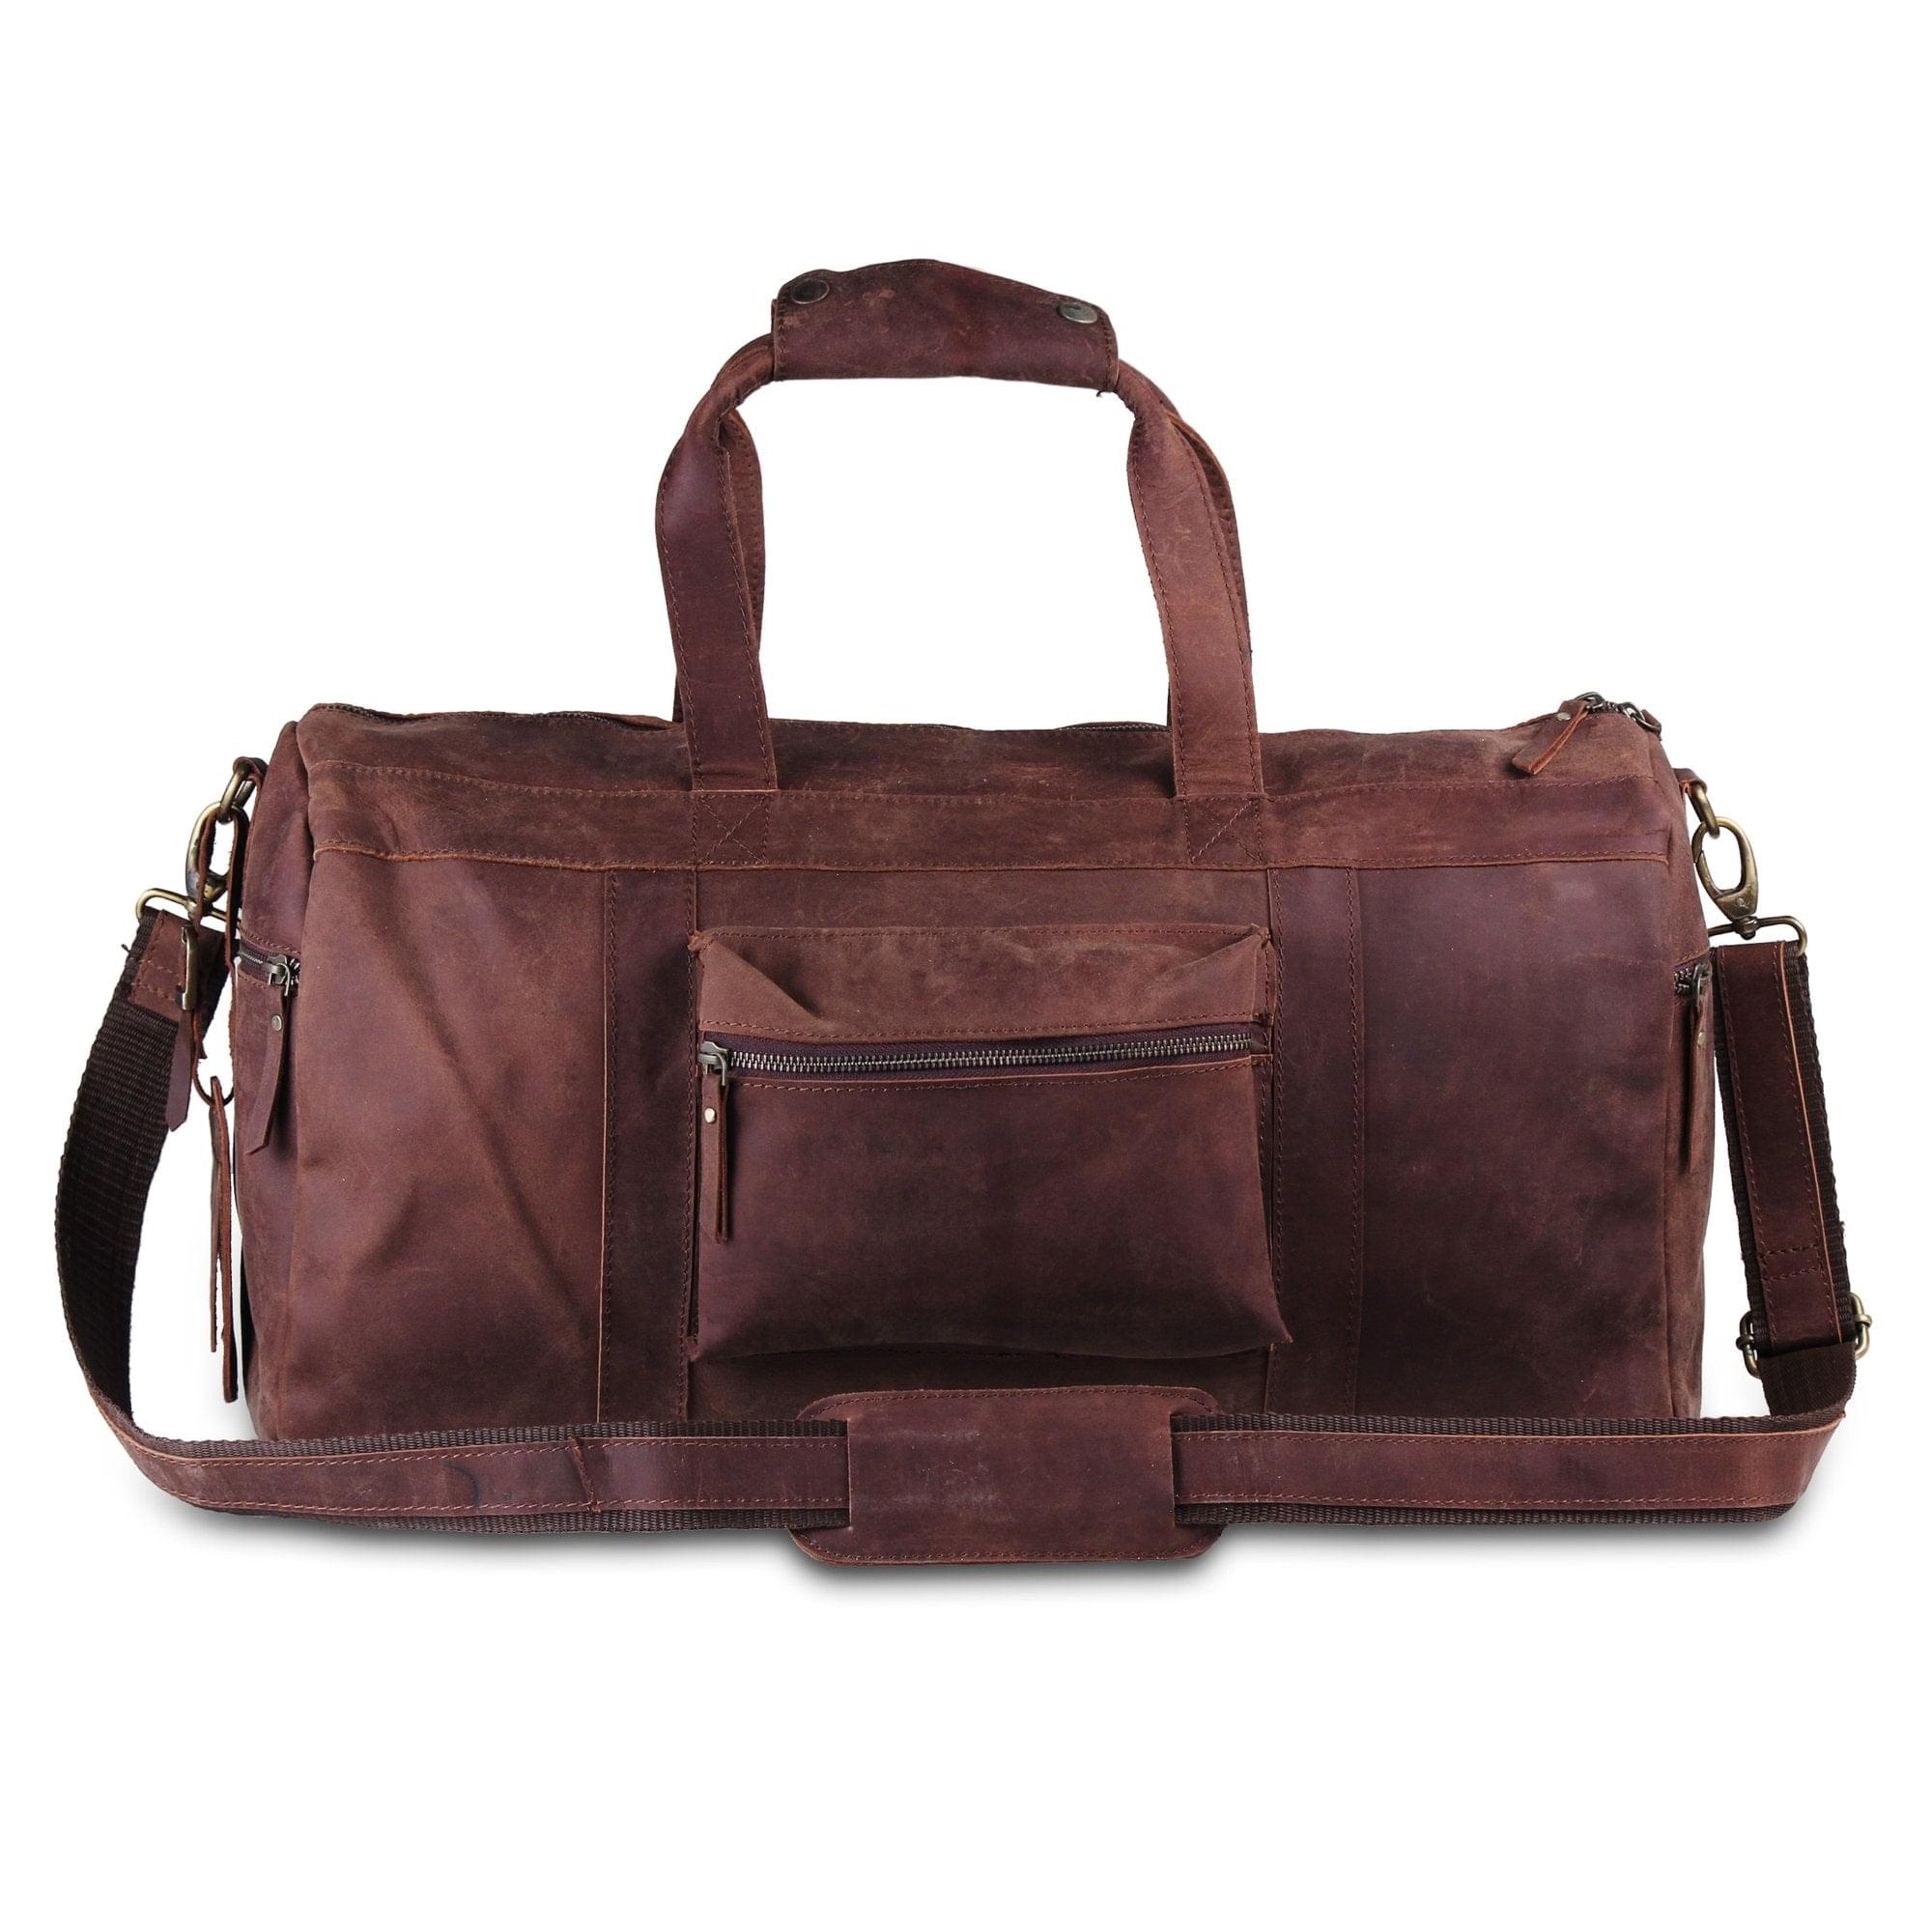 Genuine Leather Travel Weekender 20 Inch Brown Duffle Bag